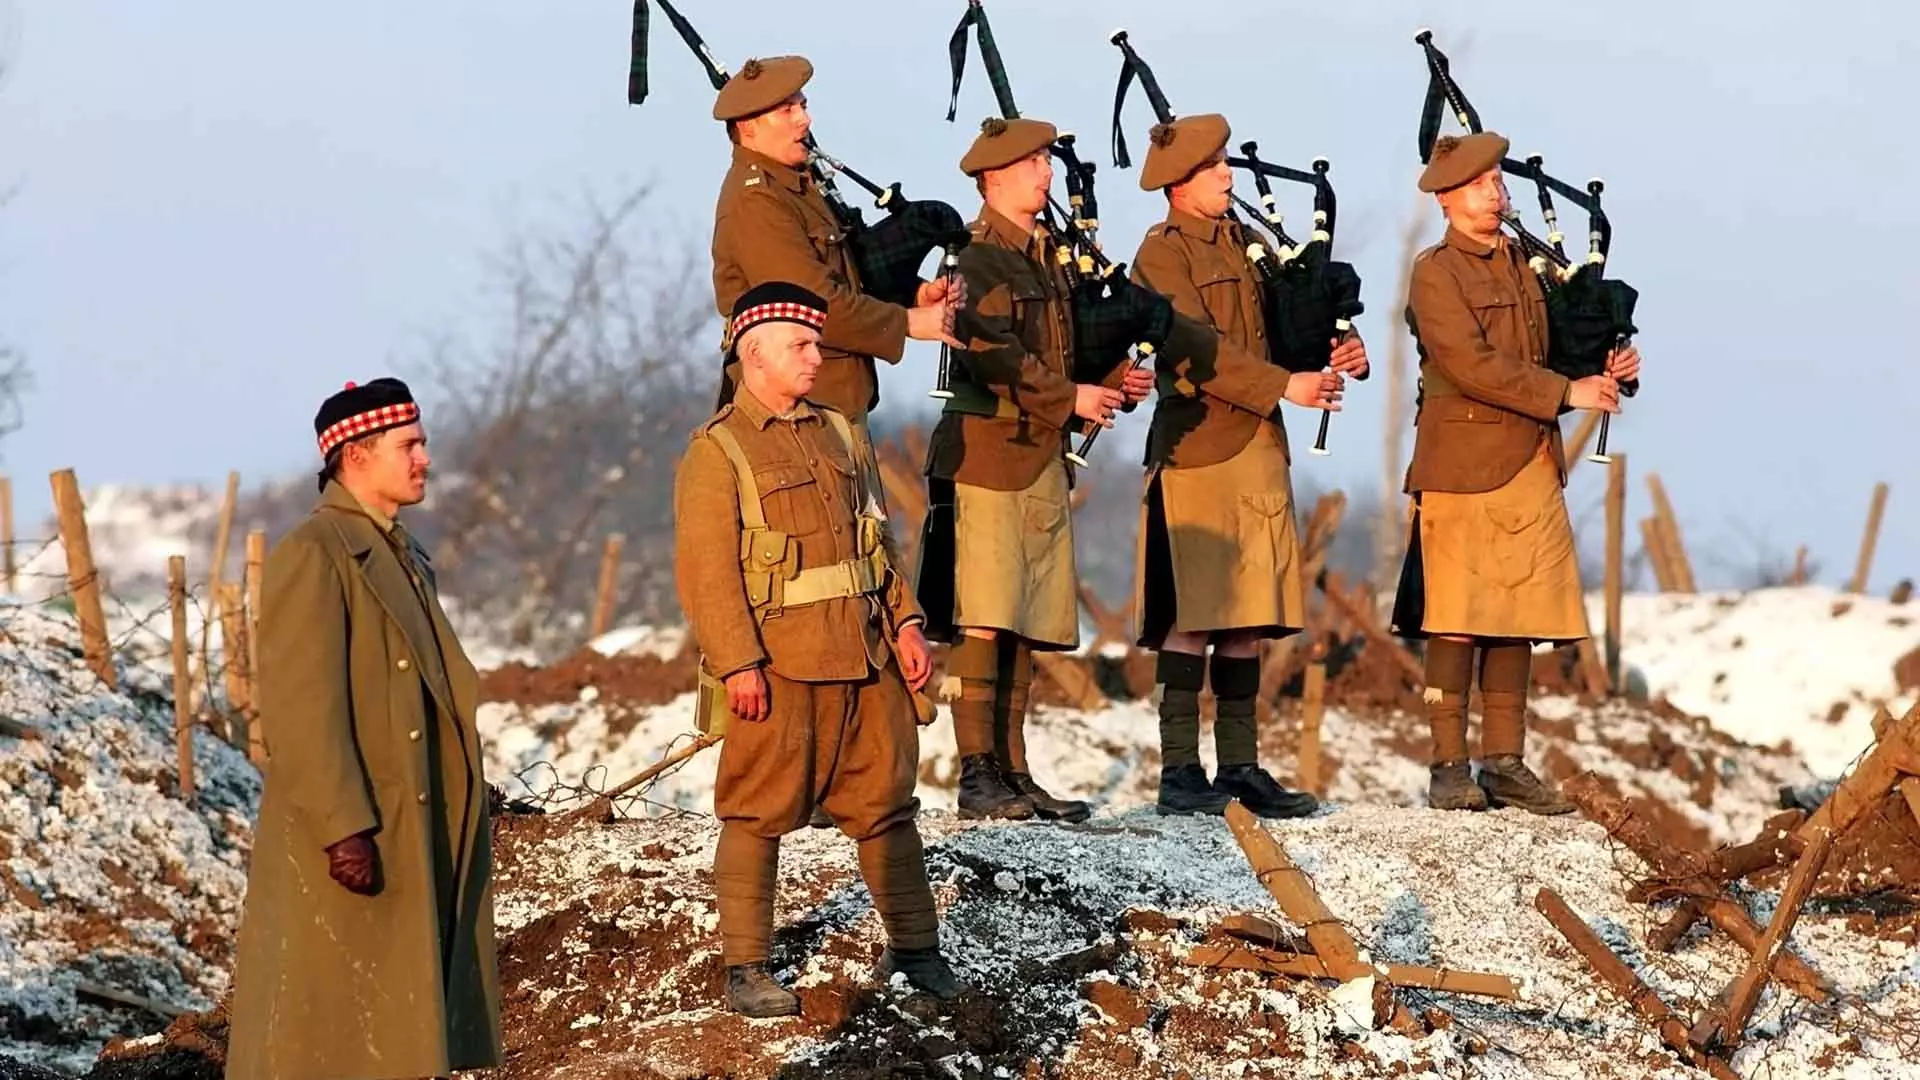 سربازان فیلم Joyeux Noël در حال برگزاری جشن کریسمس